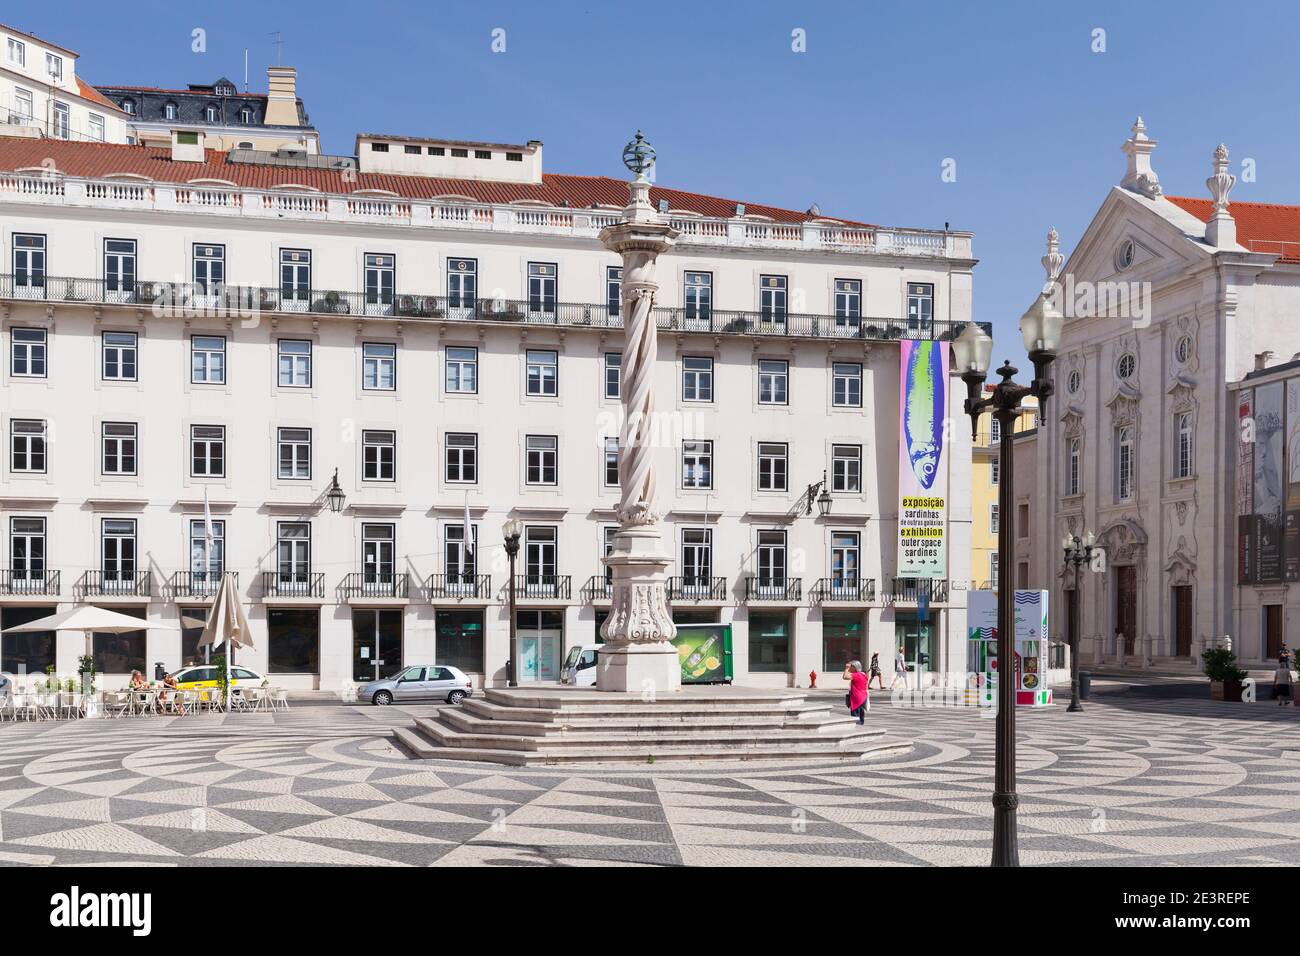 Lisbonne, Portugal - 15 août 2017 : pilori de Lisbonne à la Praca do Municipio, les gens ordinaires sont dans la rue Banque D'Images